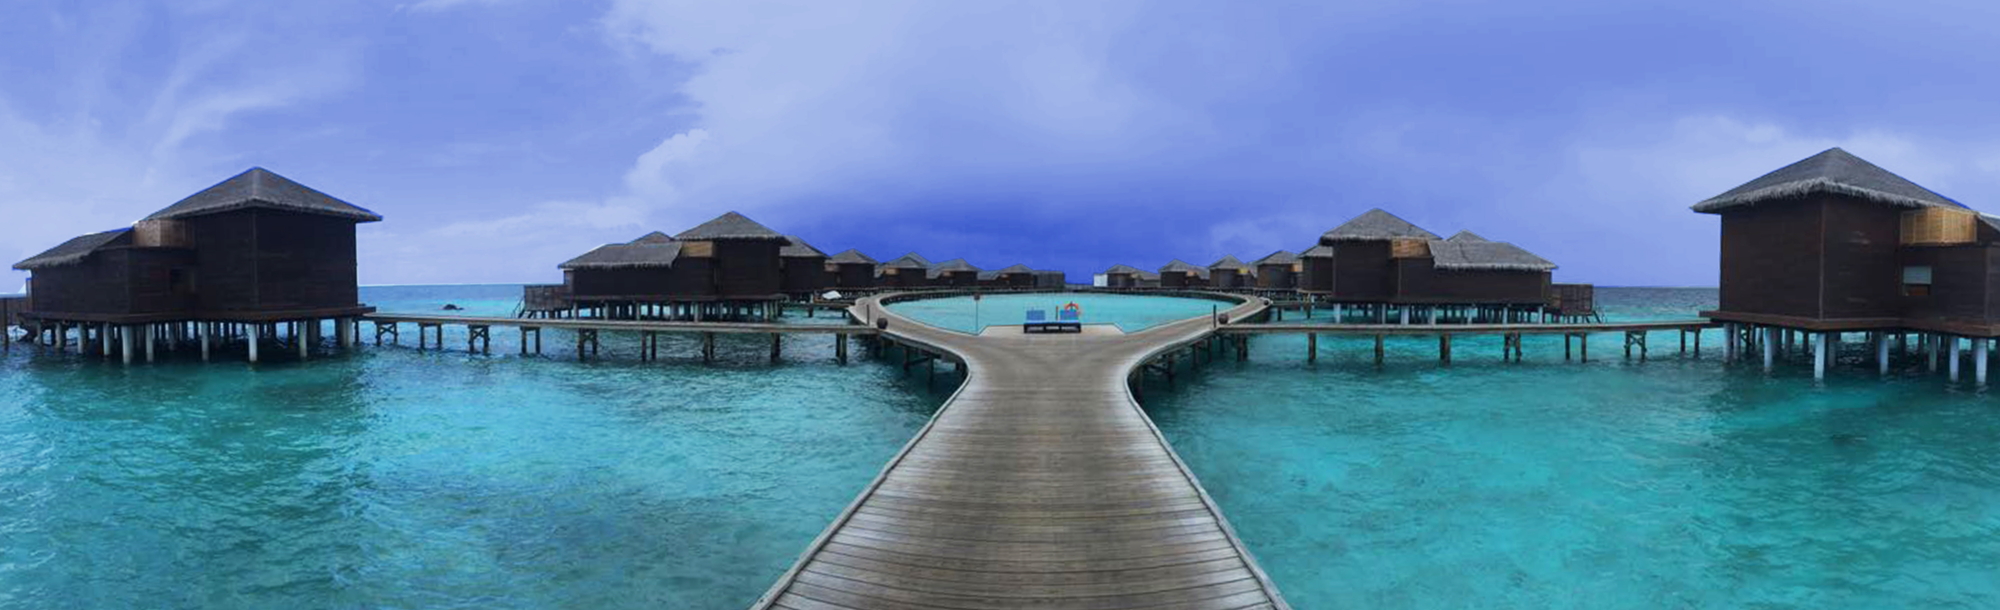 Î‘Ï€Î¿Ï„Î­Î»ÎµÏƒÎ¼Î± ÎµÎ¹ÎºÏŒÎ½Î±Ï‚ Î³Î¹Î± AccorHotels Expands Its Portfolio in The Maldives